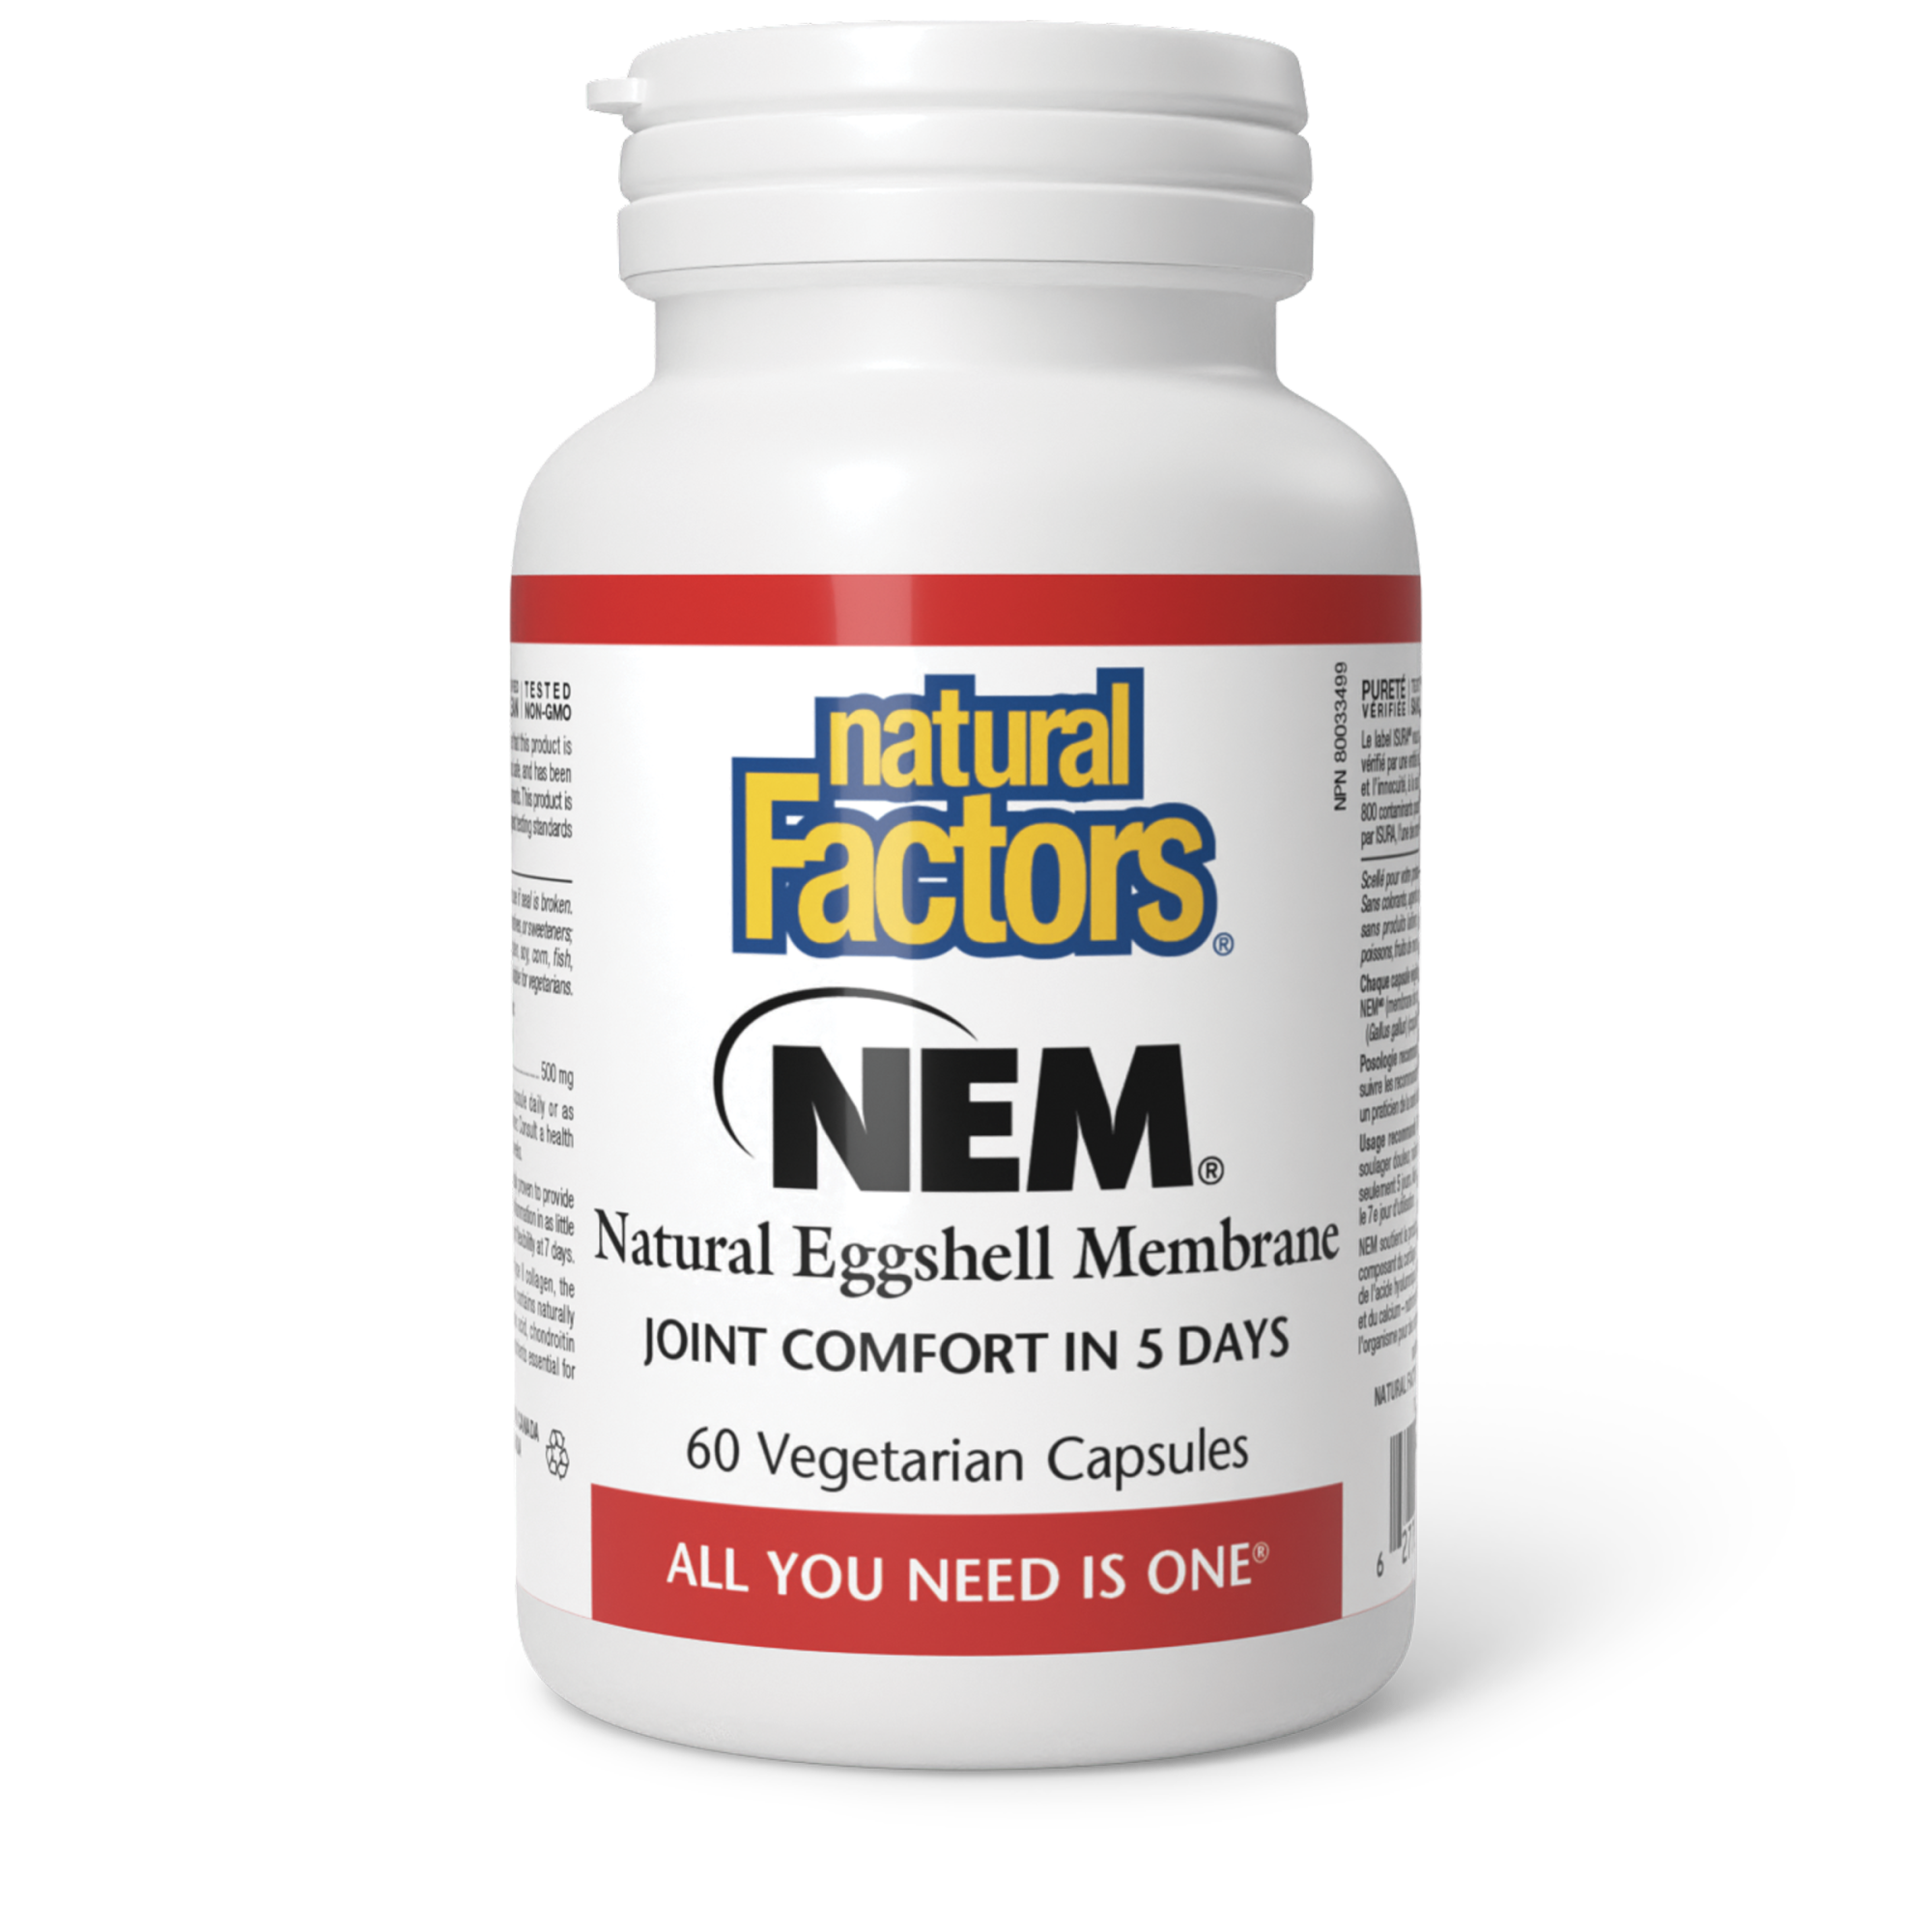 Natural Factors NEM Natural Eggshell Membrane 500mg 60 Vegetarian Capsules